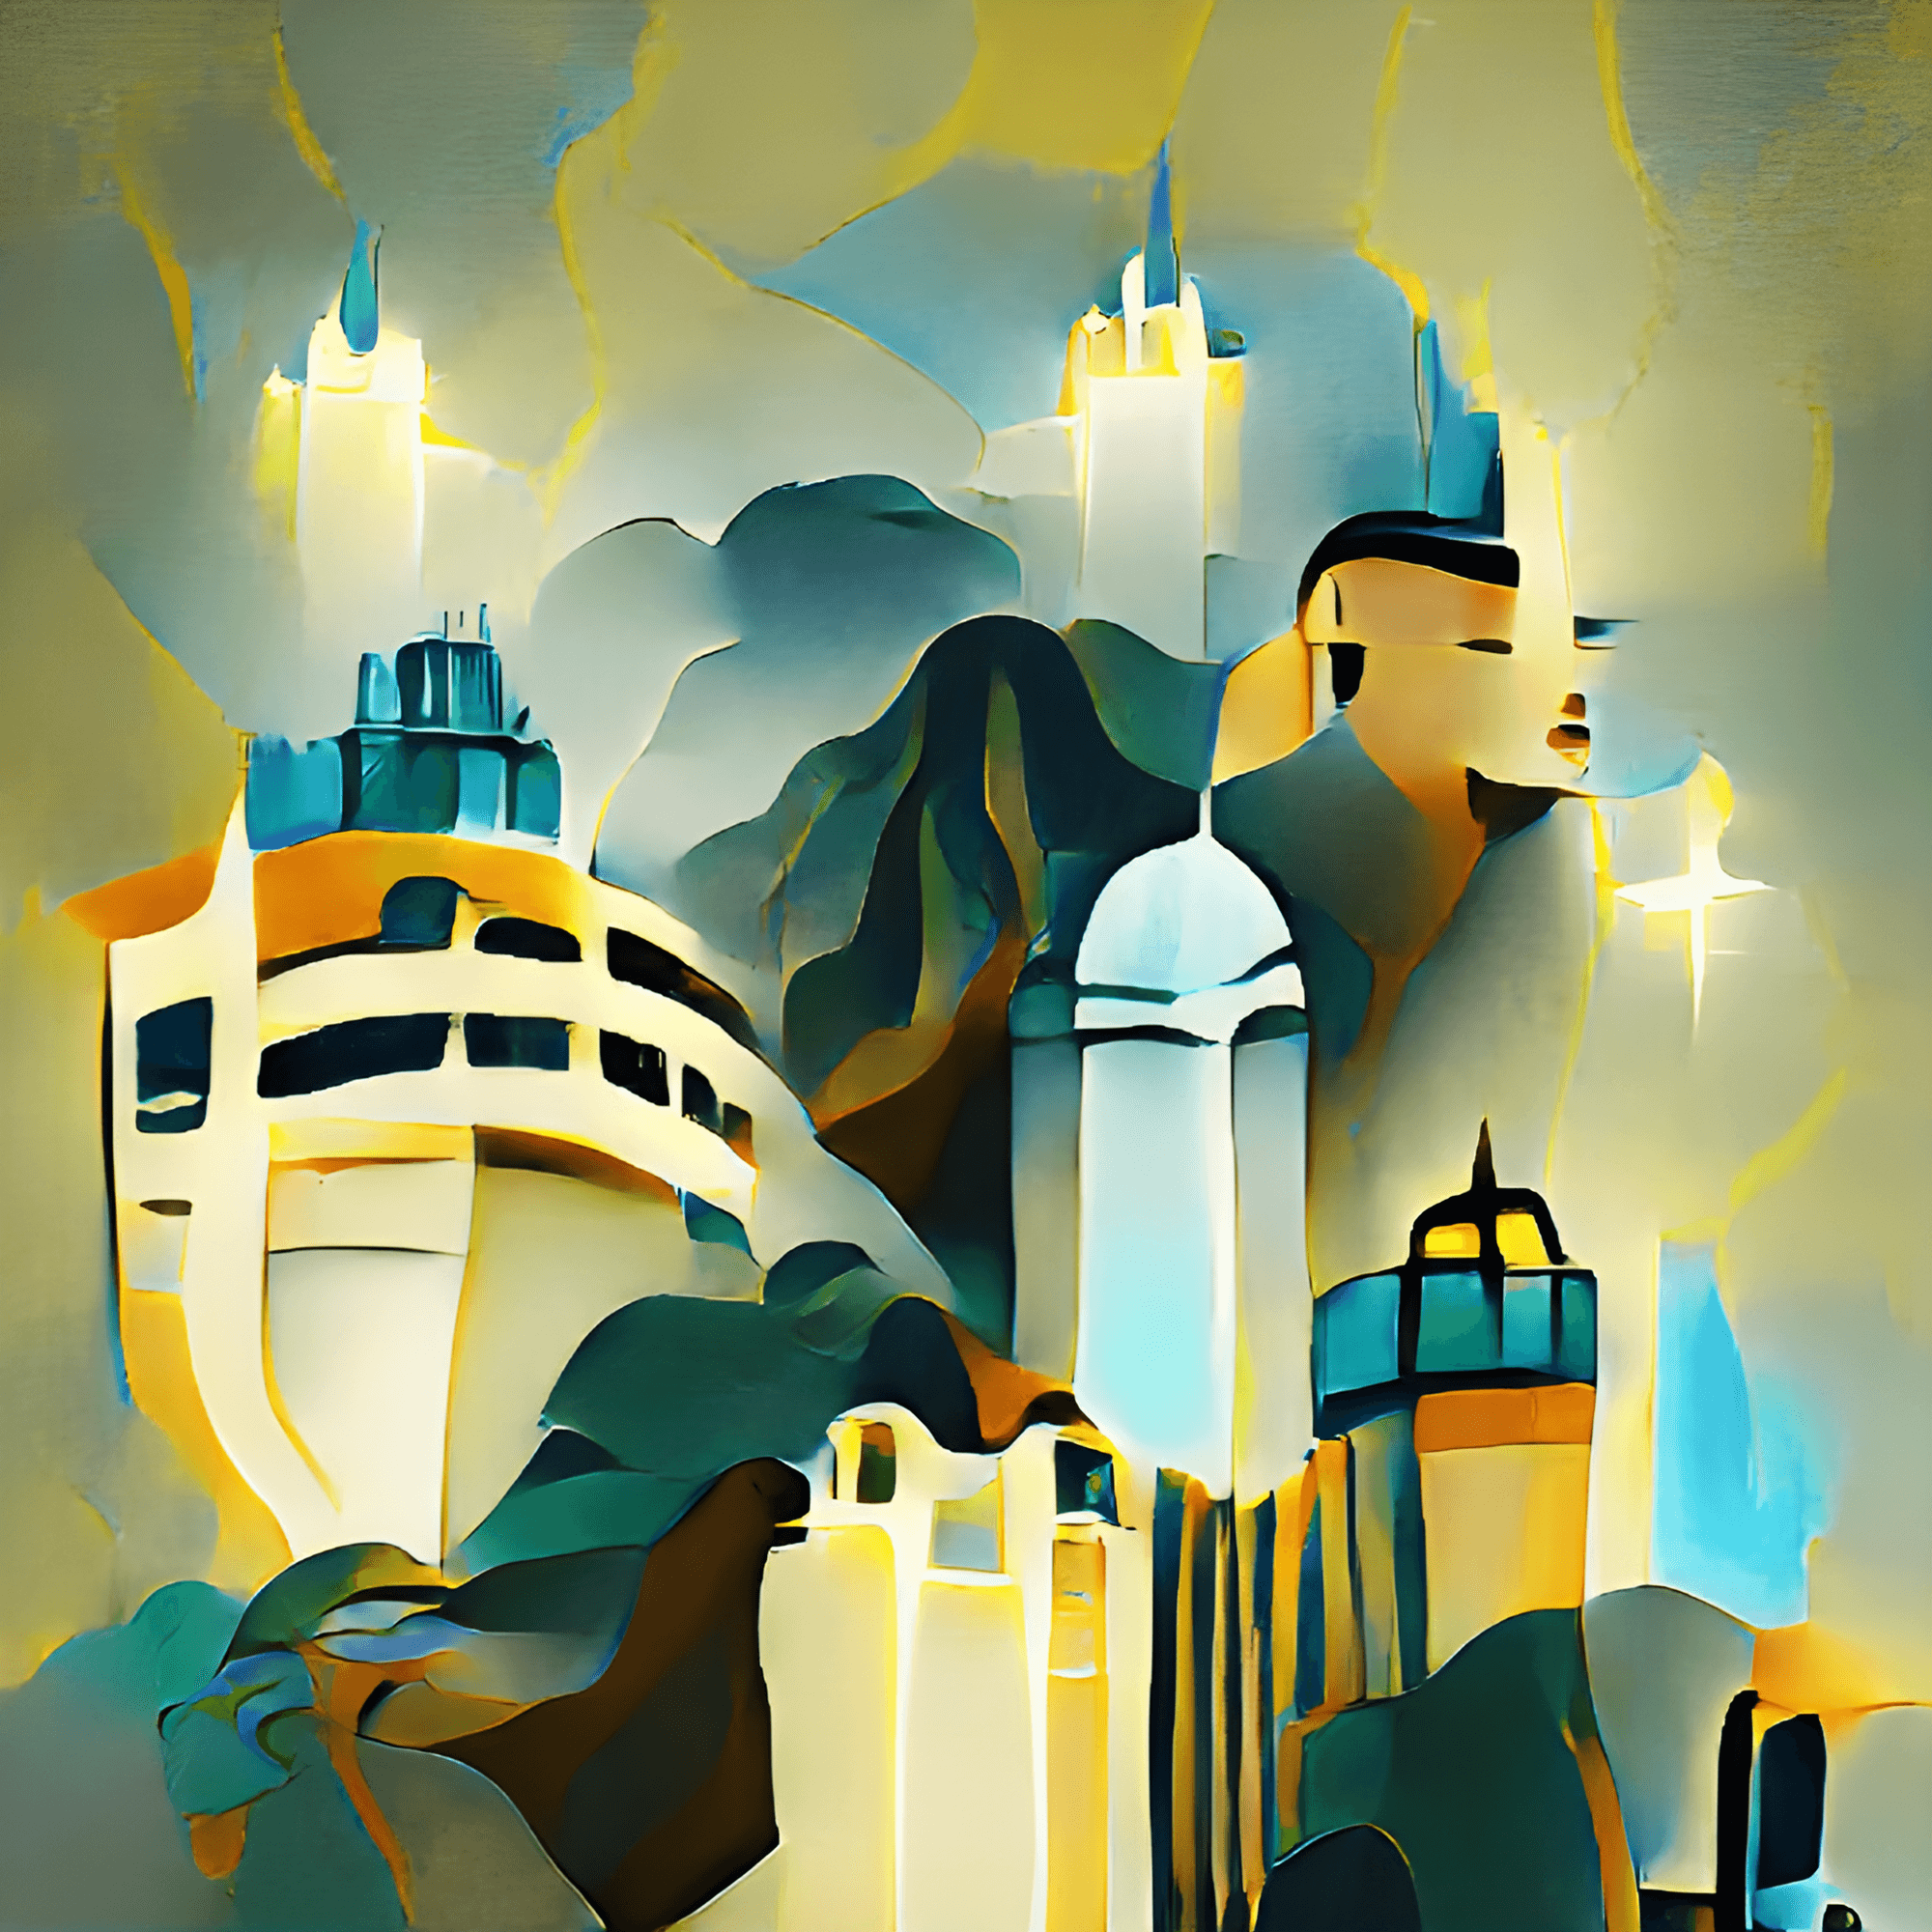 Hongkong as Fantasy Land